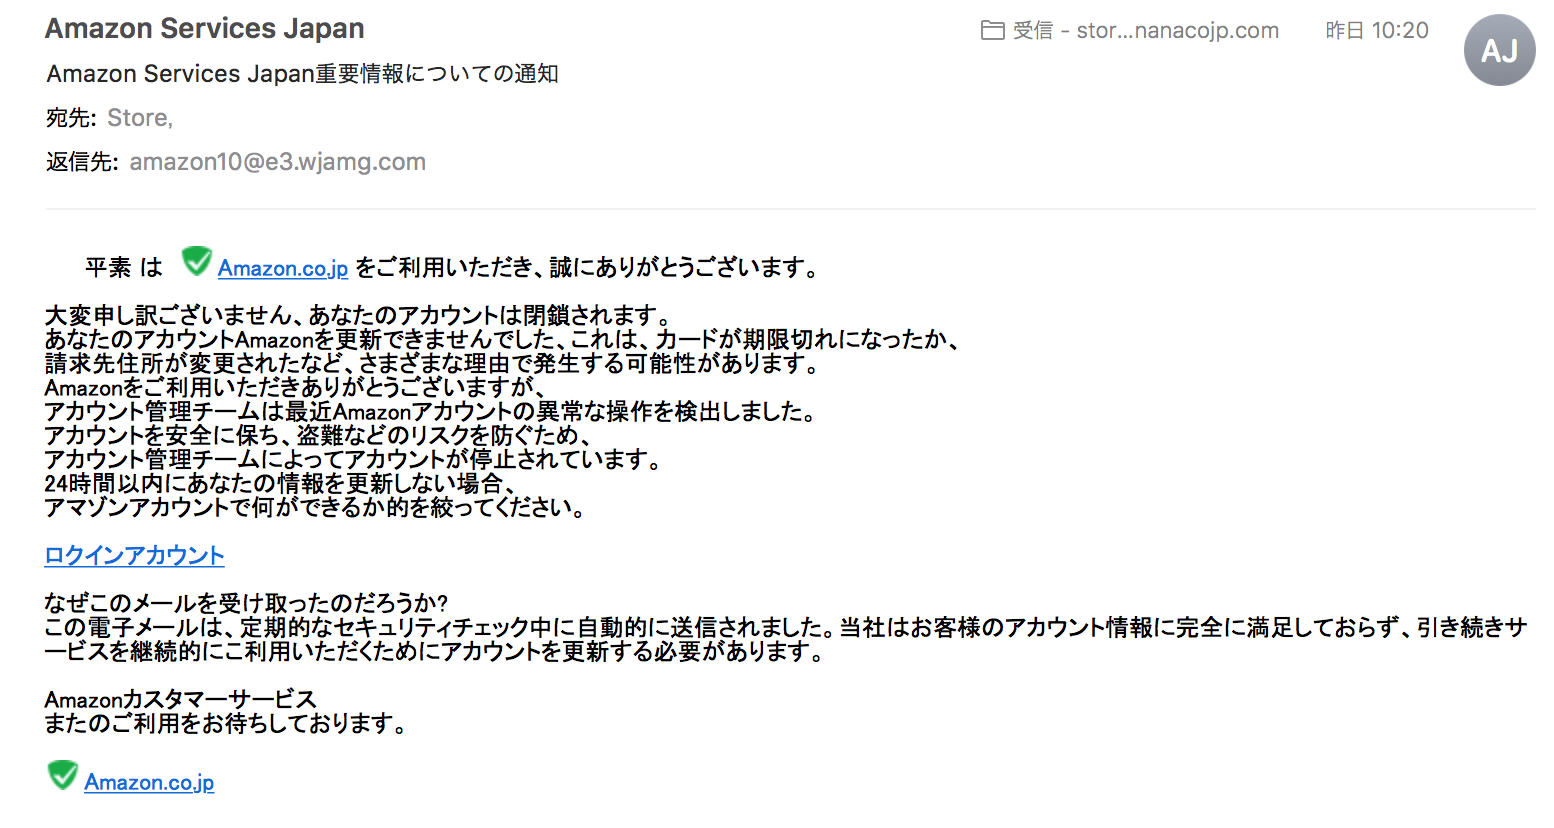 Amazon Service Japan からの迷惑メールにご注意ください Web制作 Seo対策 集客マーケティング なら ナナコジャパン 合同会社